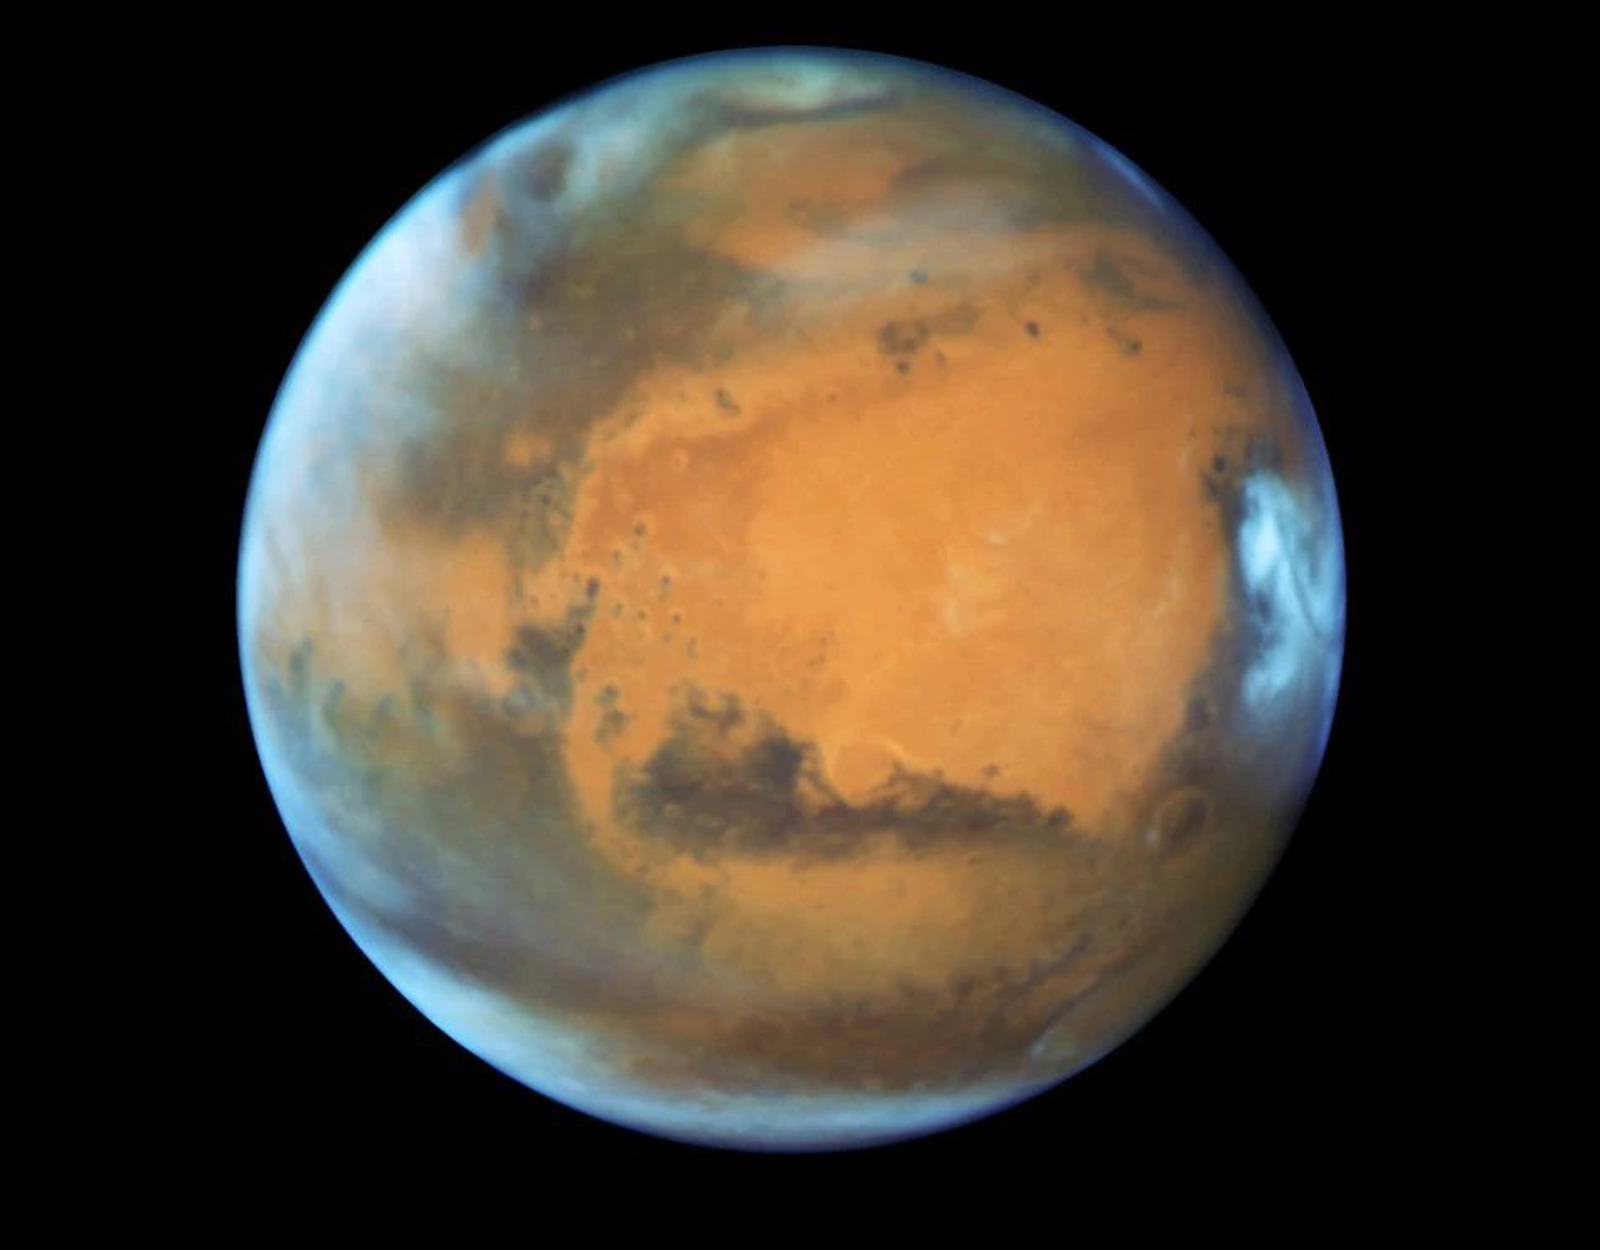 Άρης: Το ρόβερ Zhurong ανατρέπει όσα ξέραμε για το νερό στον πλανήτη – Τα εντυπωσιακά δεδομένα που ανακάλυψε